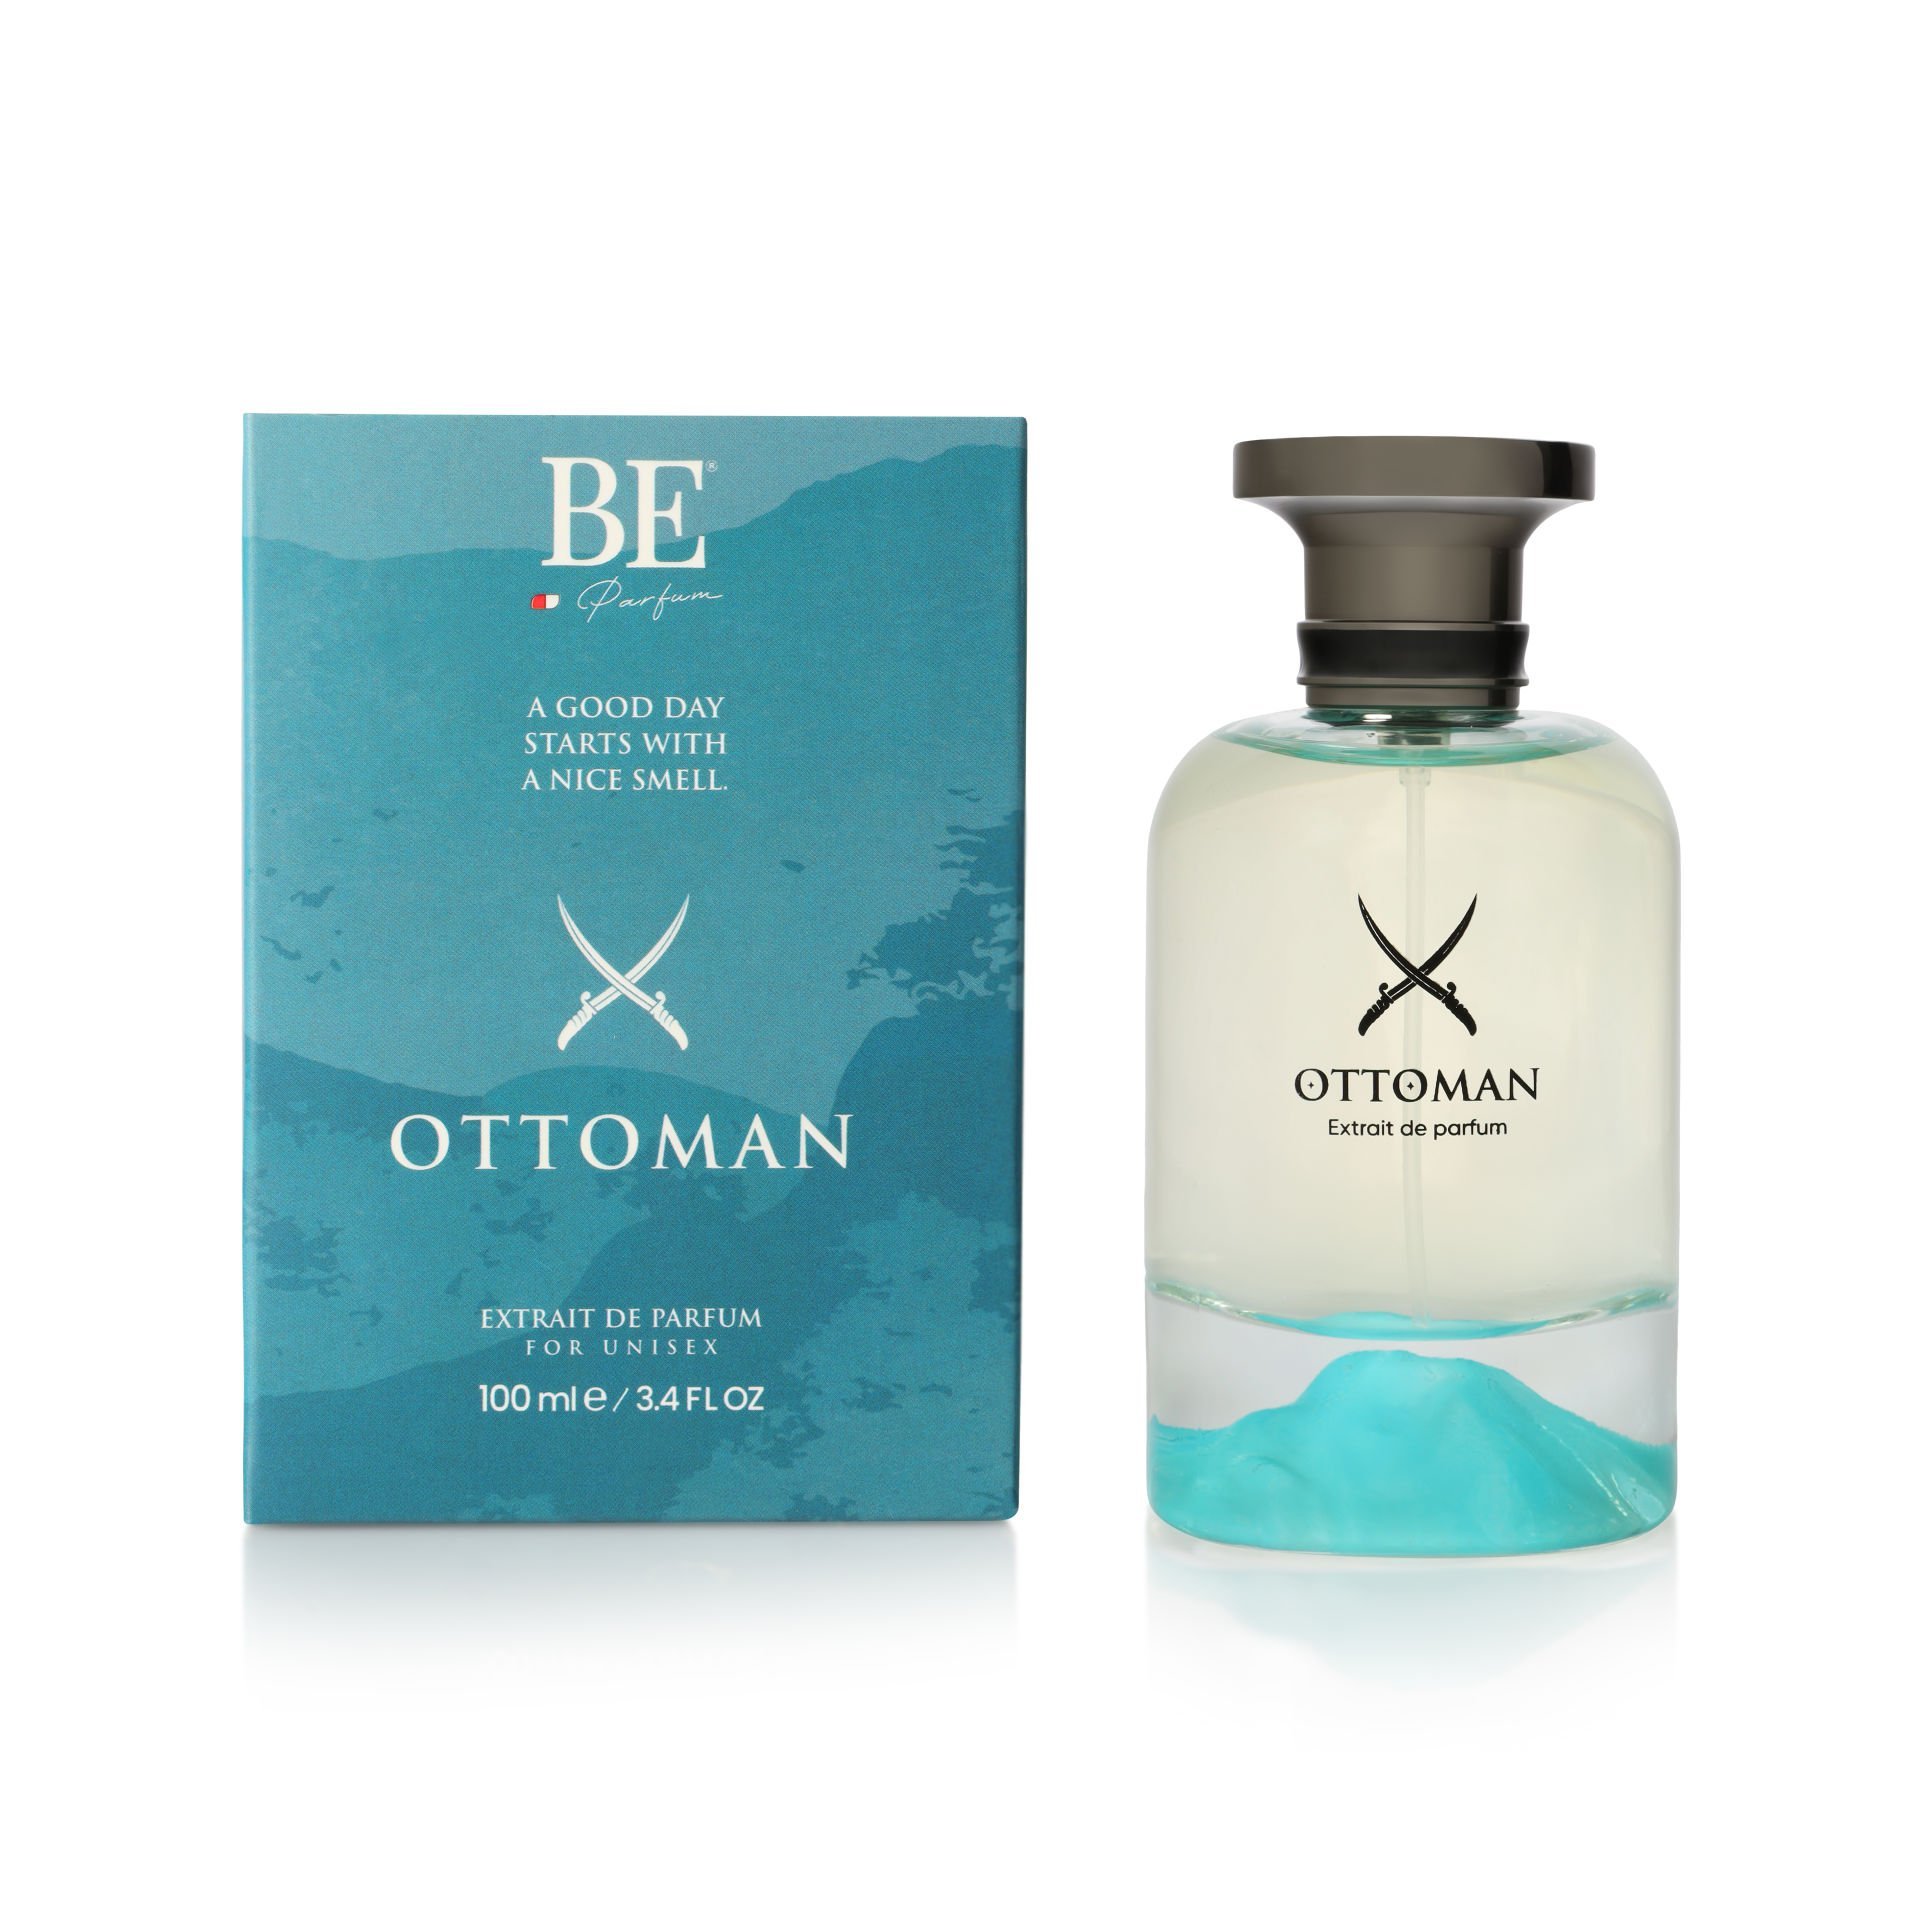 Ottoman 100 ml Extraıt De Parfum